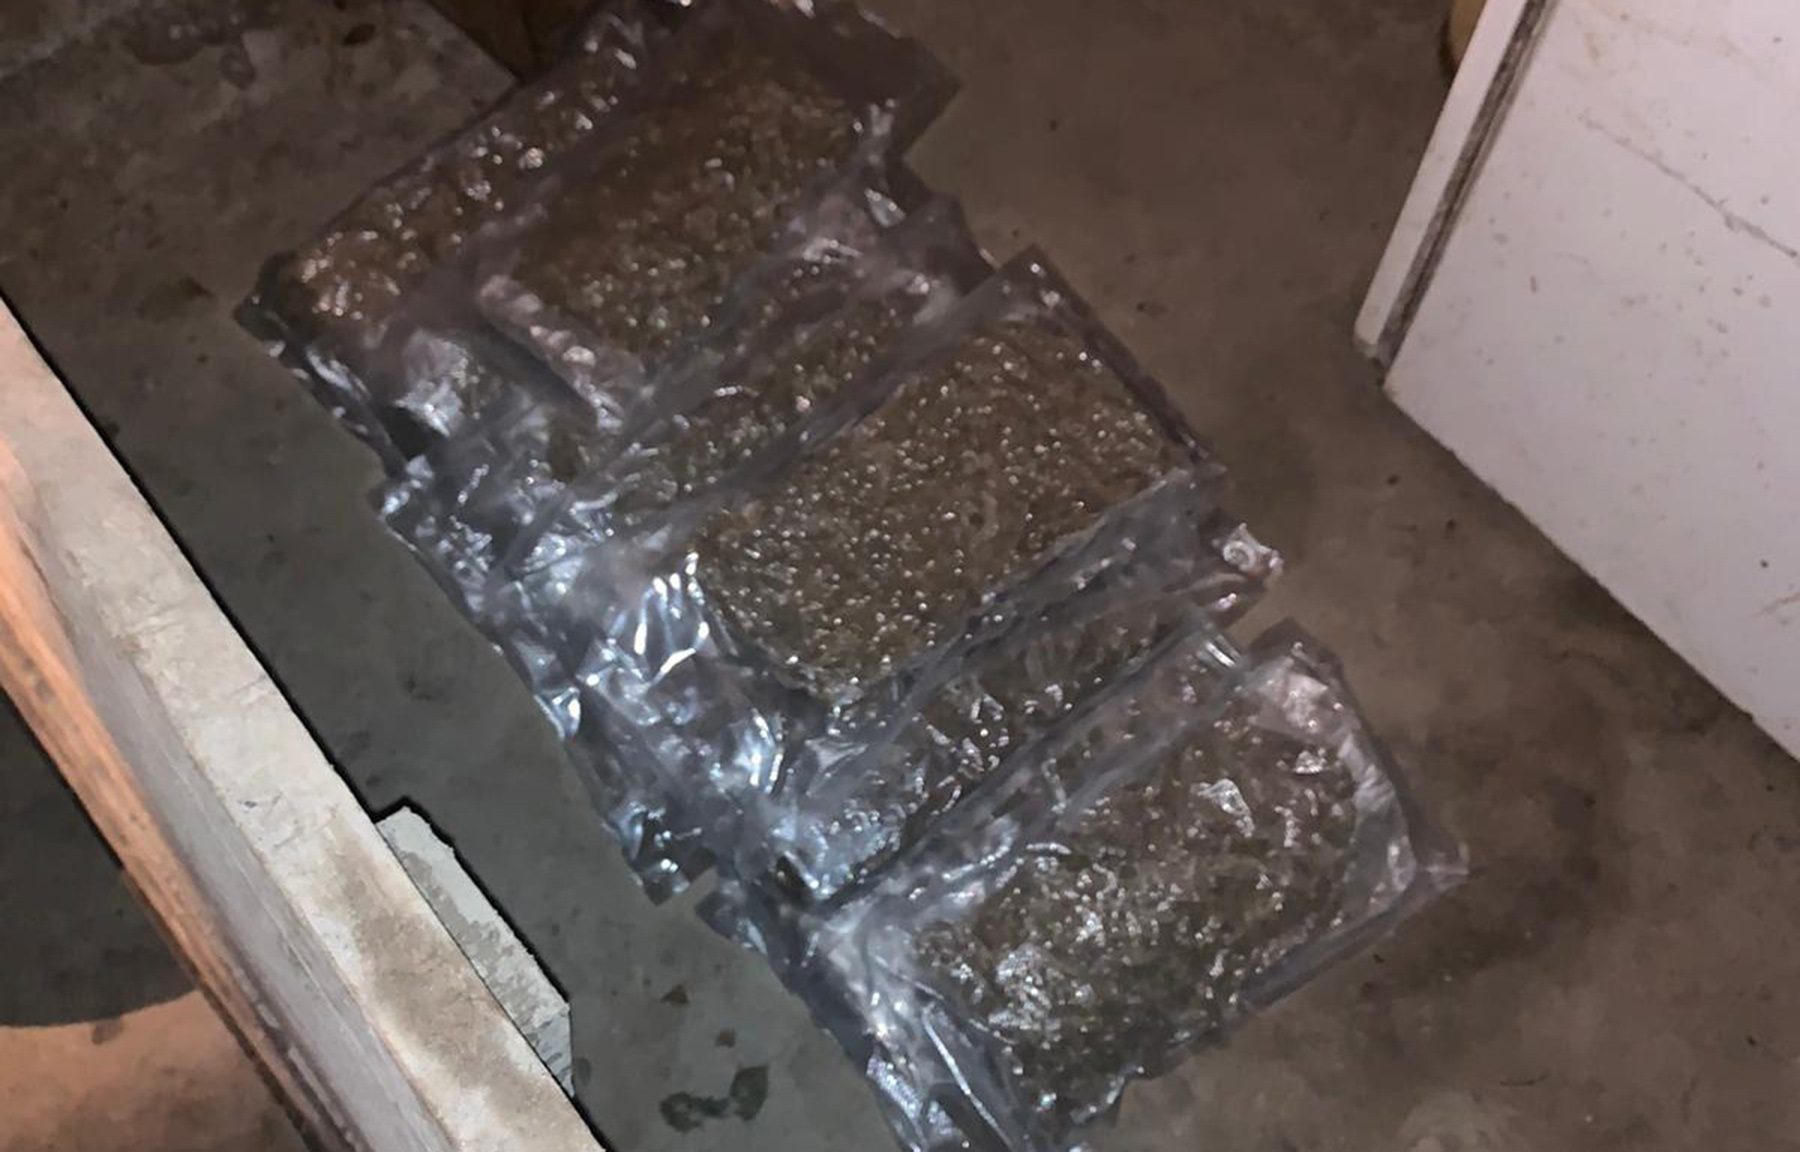 Полиција приликом претреса возила осумњичених пронашла 33 пакета са 10,5 килограма марихуане